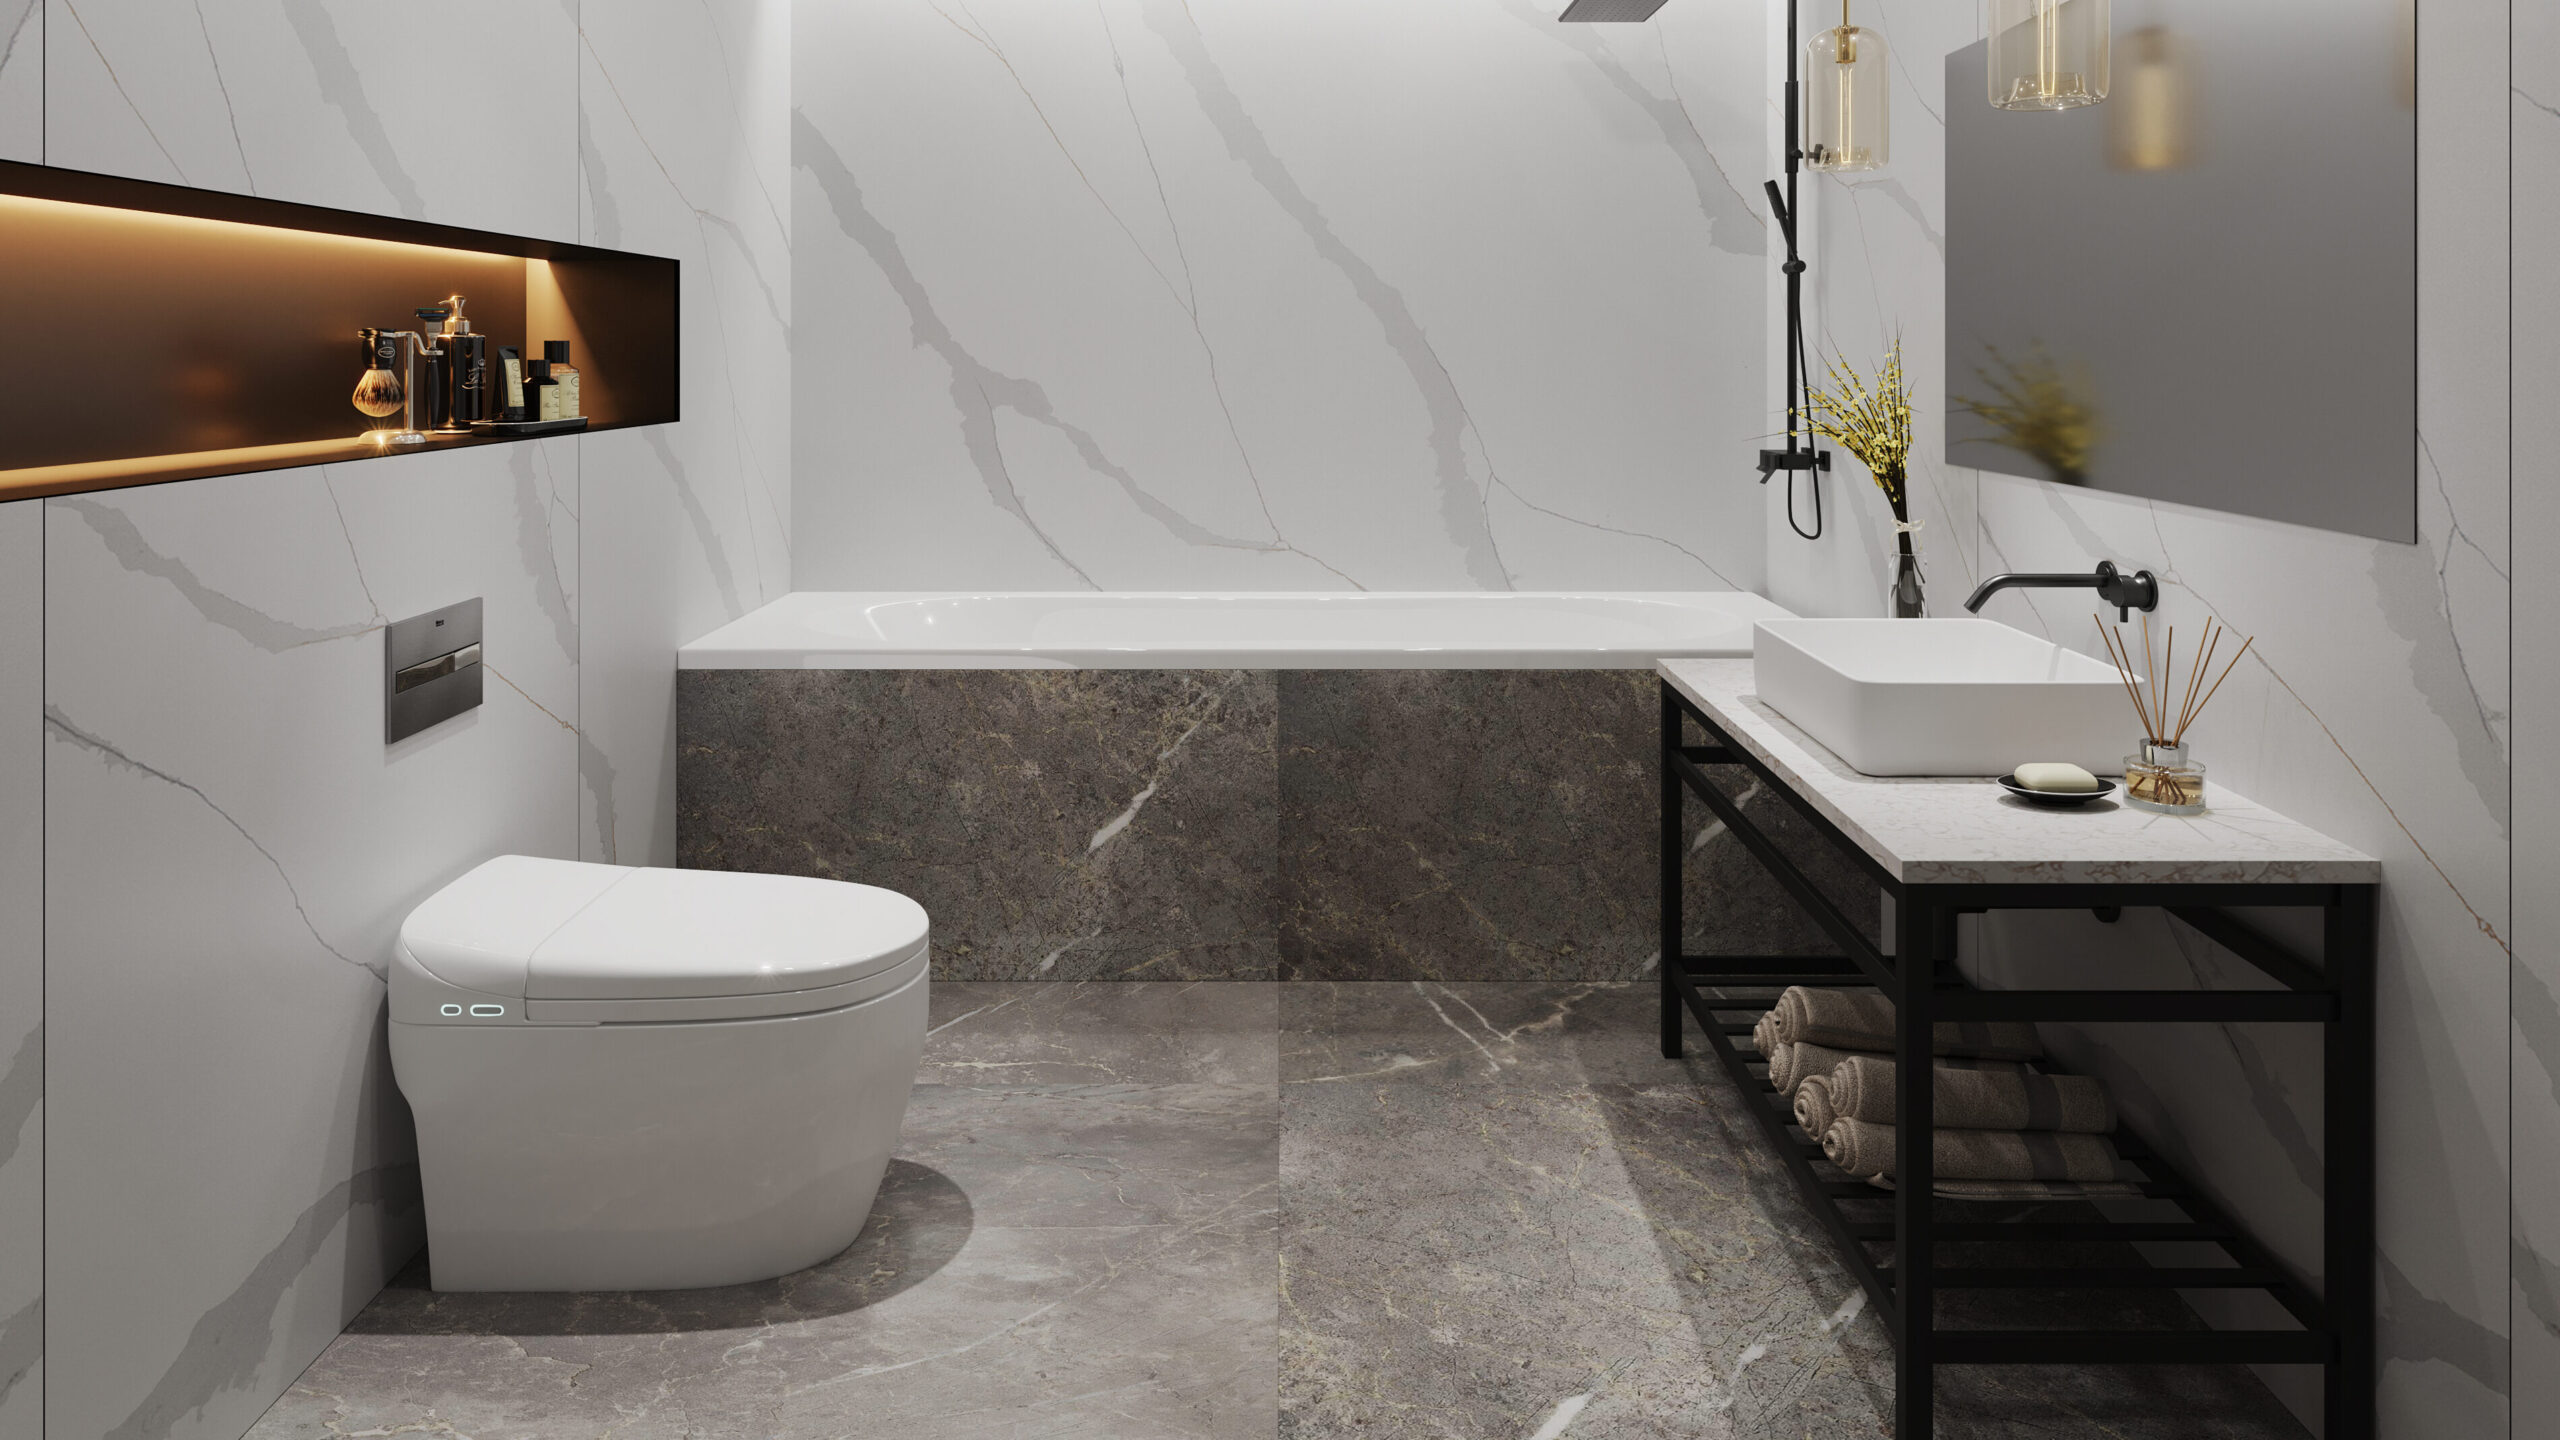 LX Hausys Viatera quartz for master bathroom interior design